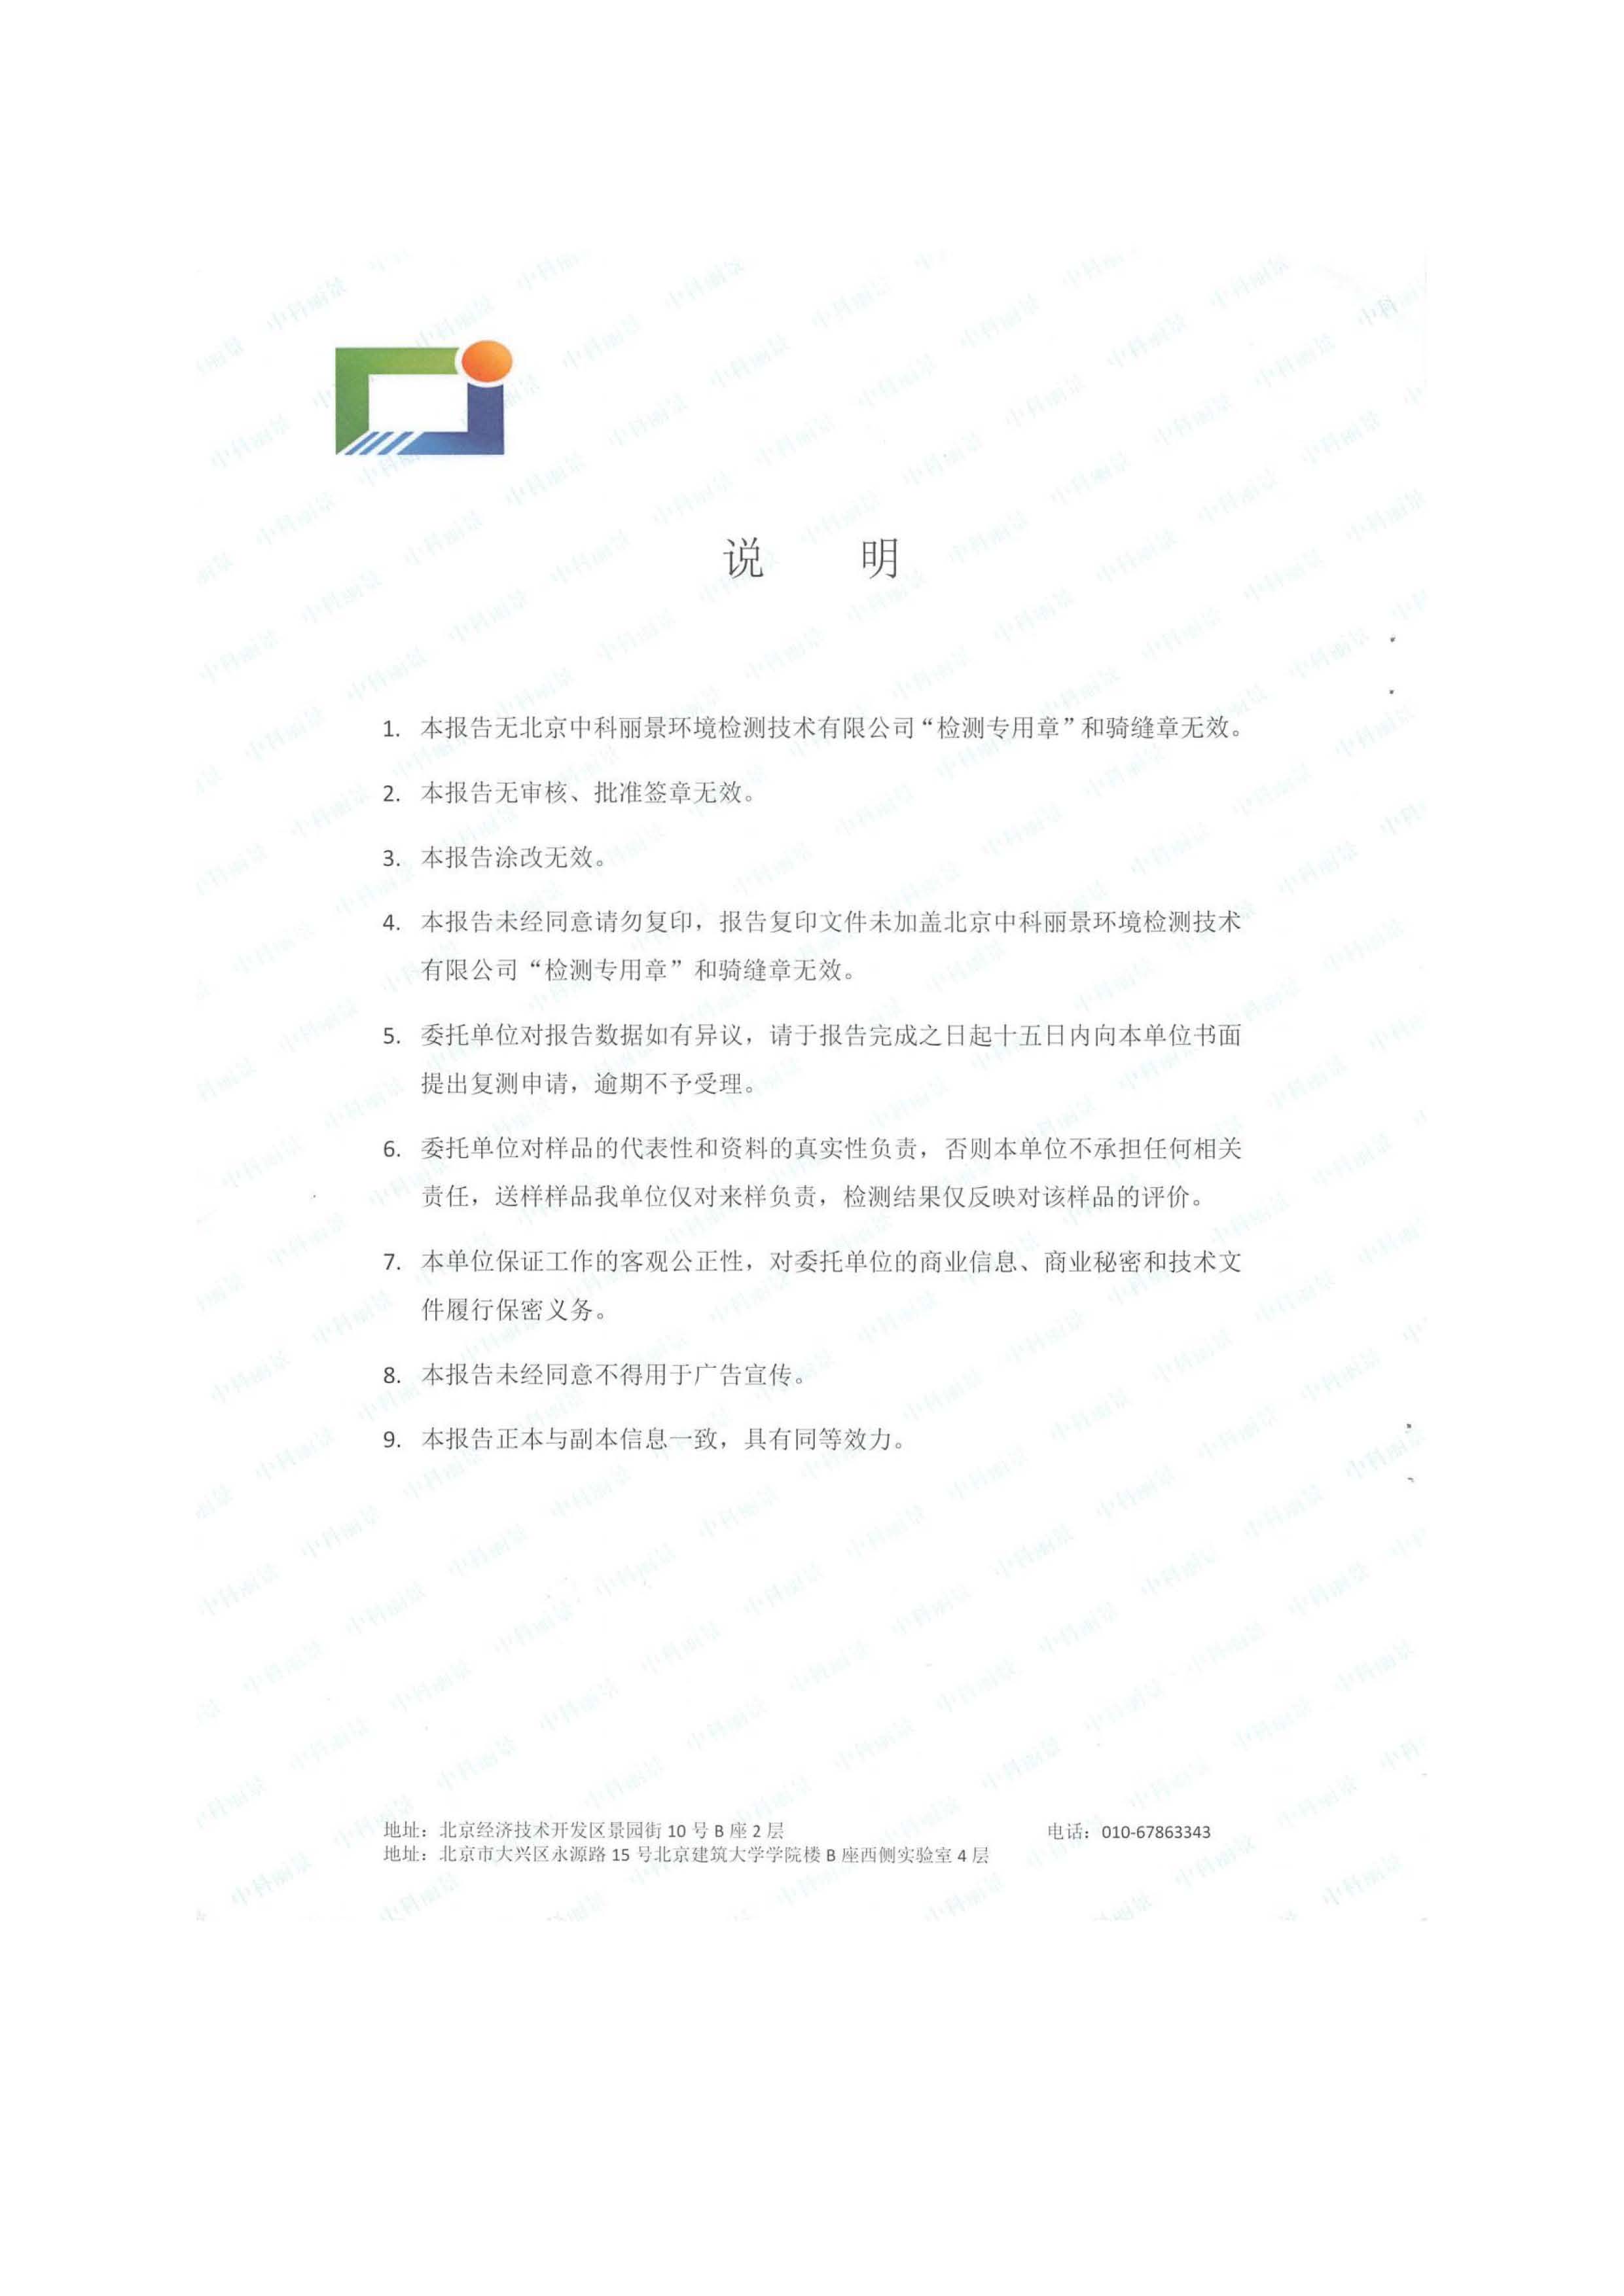 北京博瑞莱智能科技集团有限公司项目竣工环境保护验收监测报告全本公示(图43)